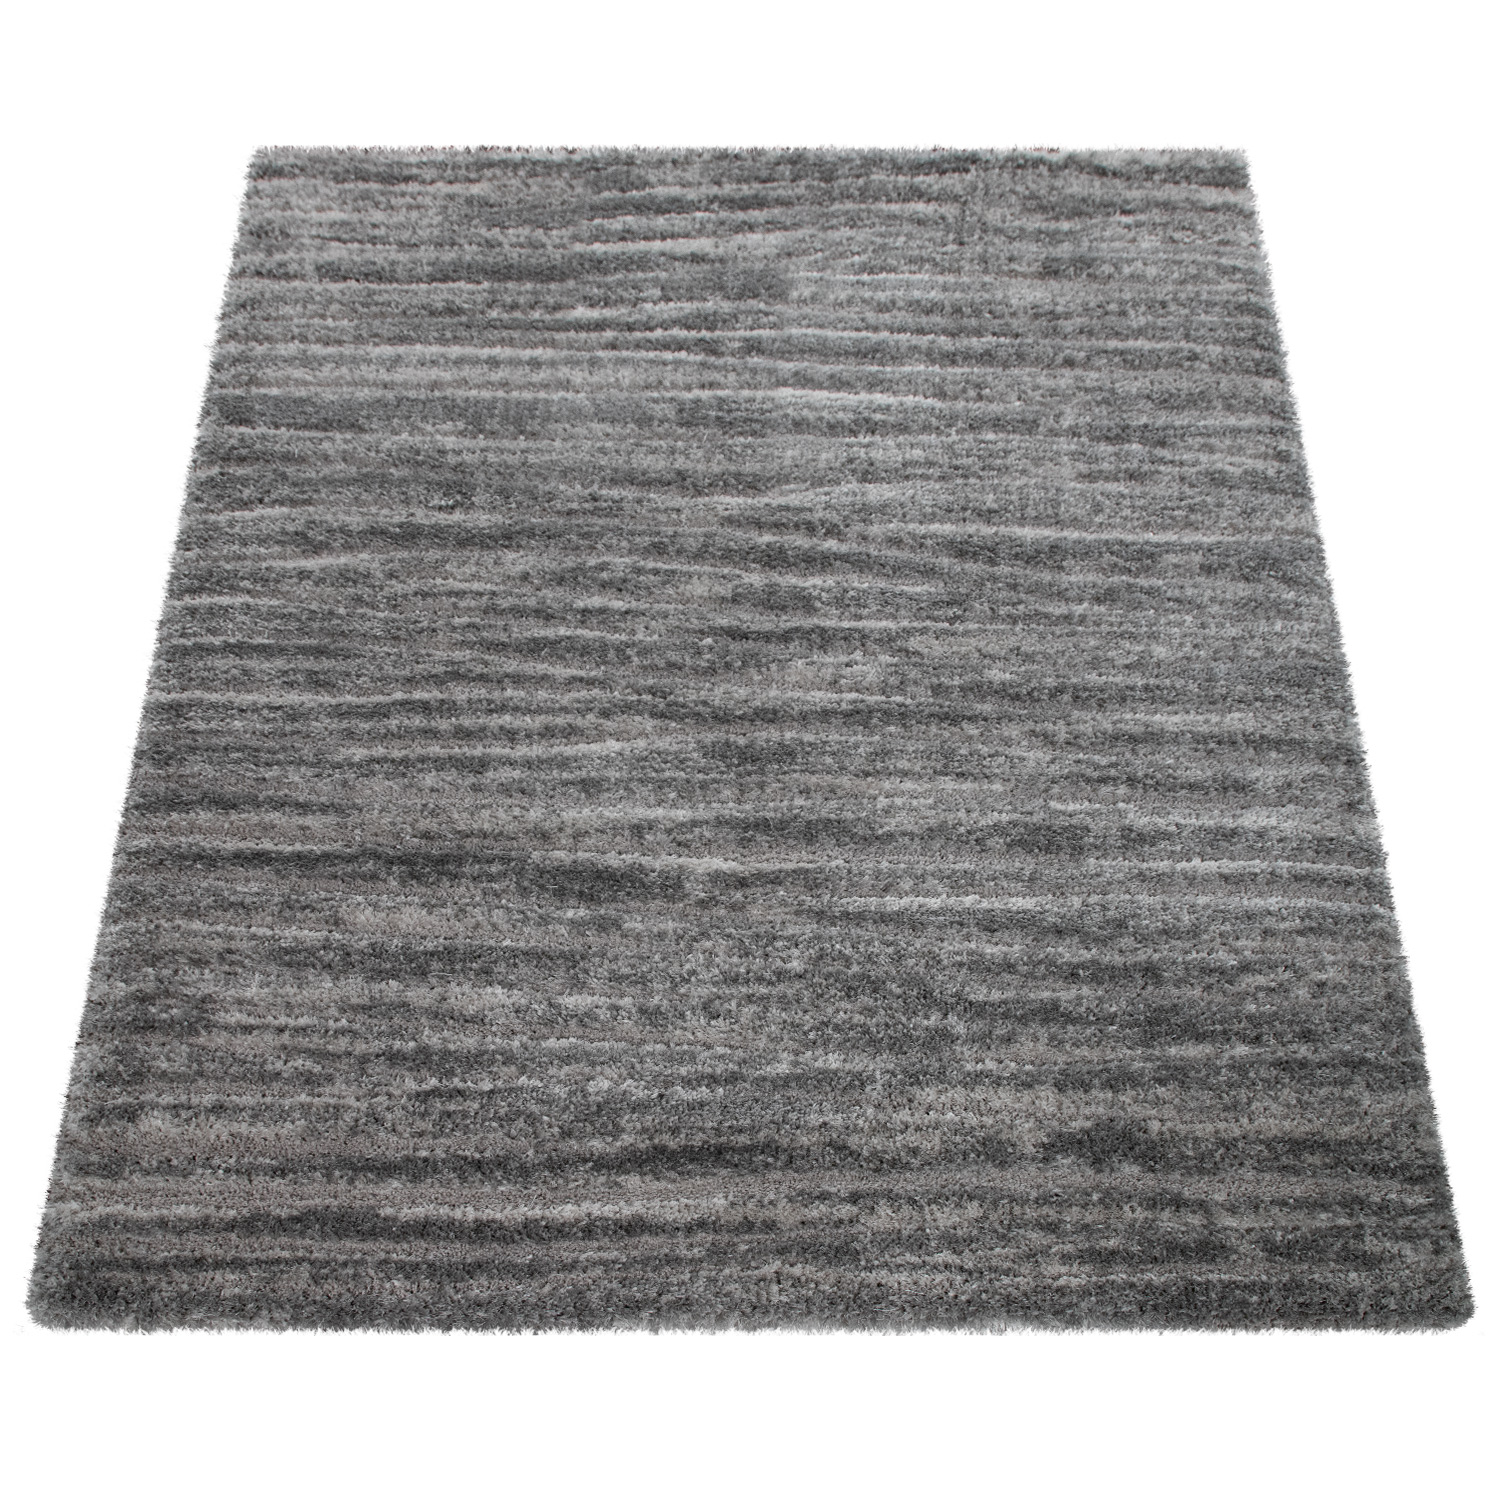 Wohnzimmer-Teppich Shaggy Hochflor Meliert Grau 